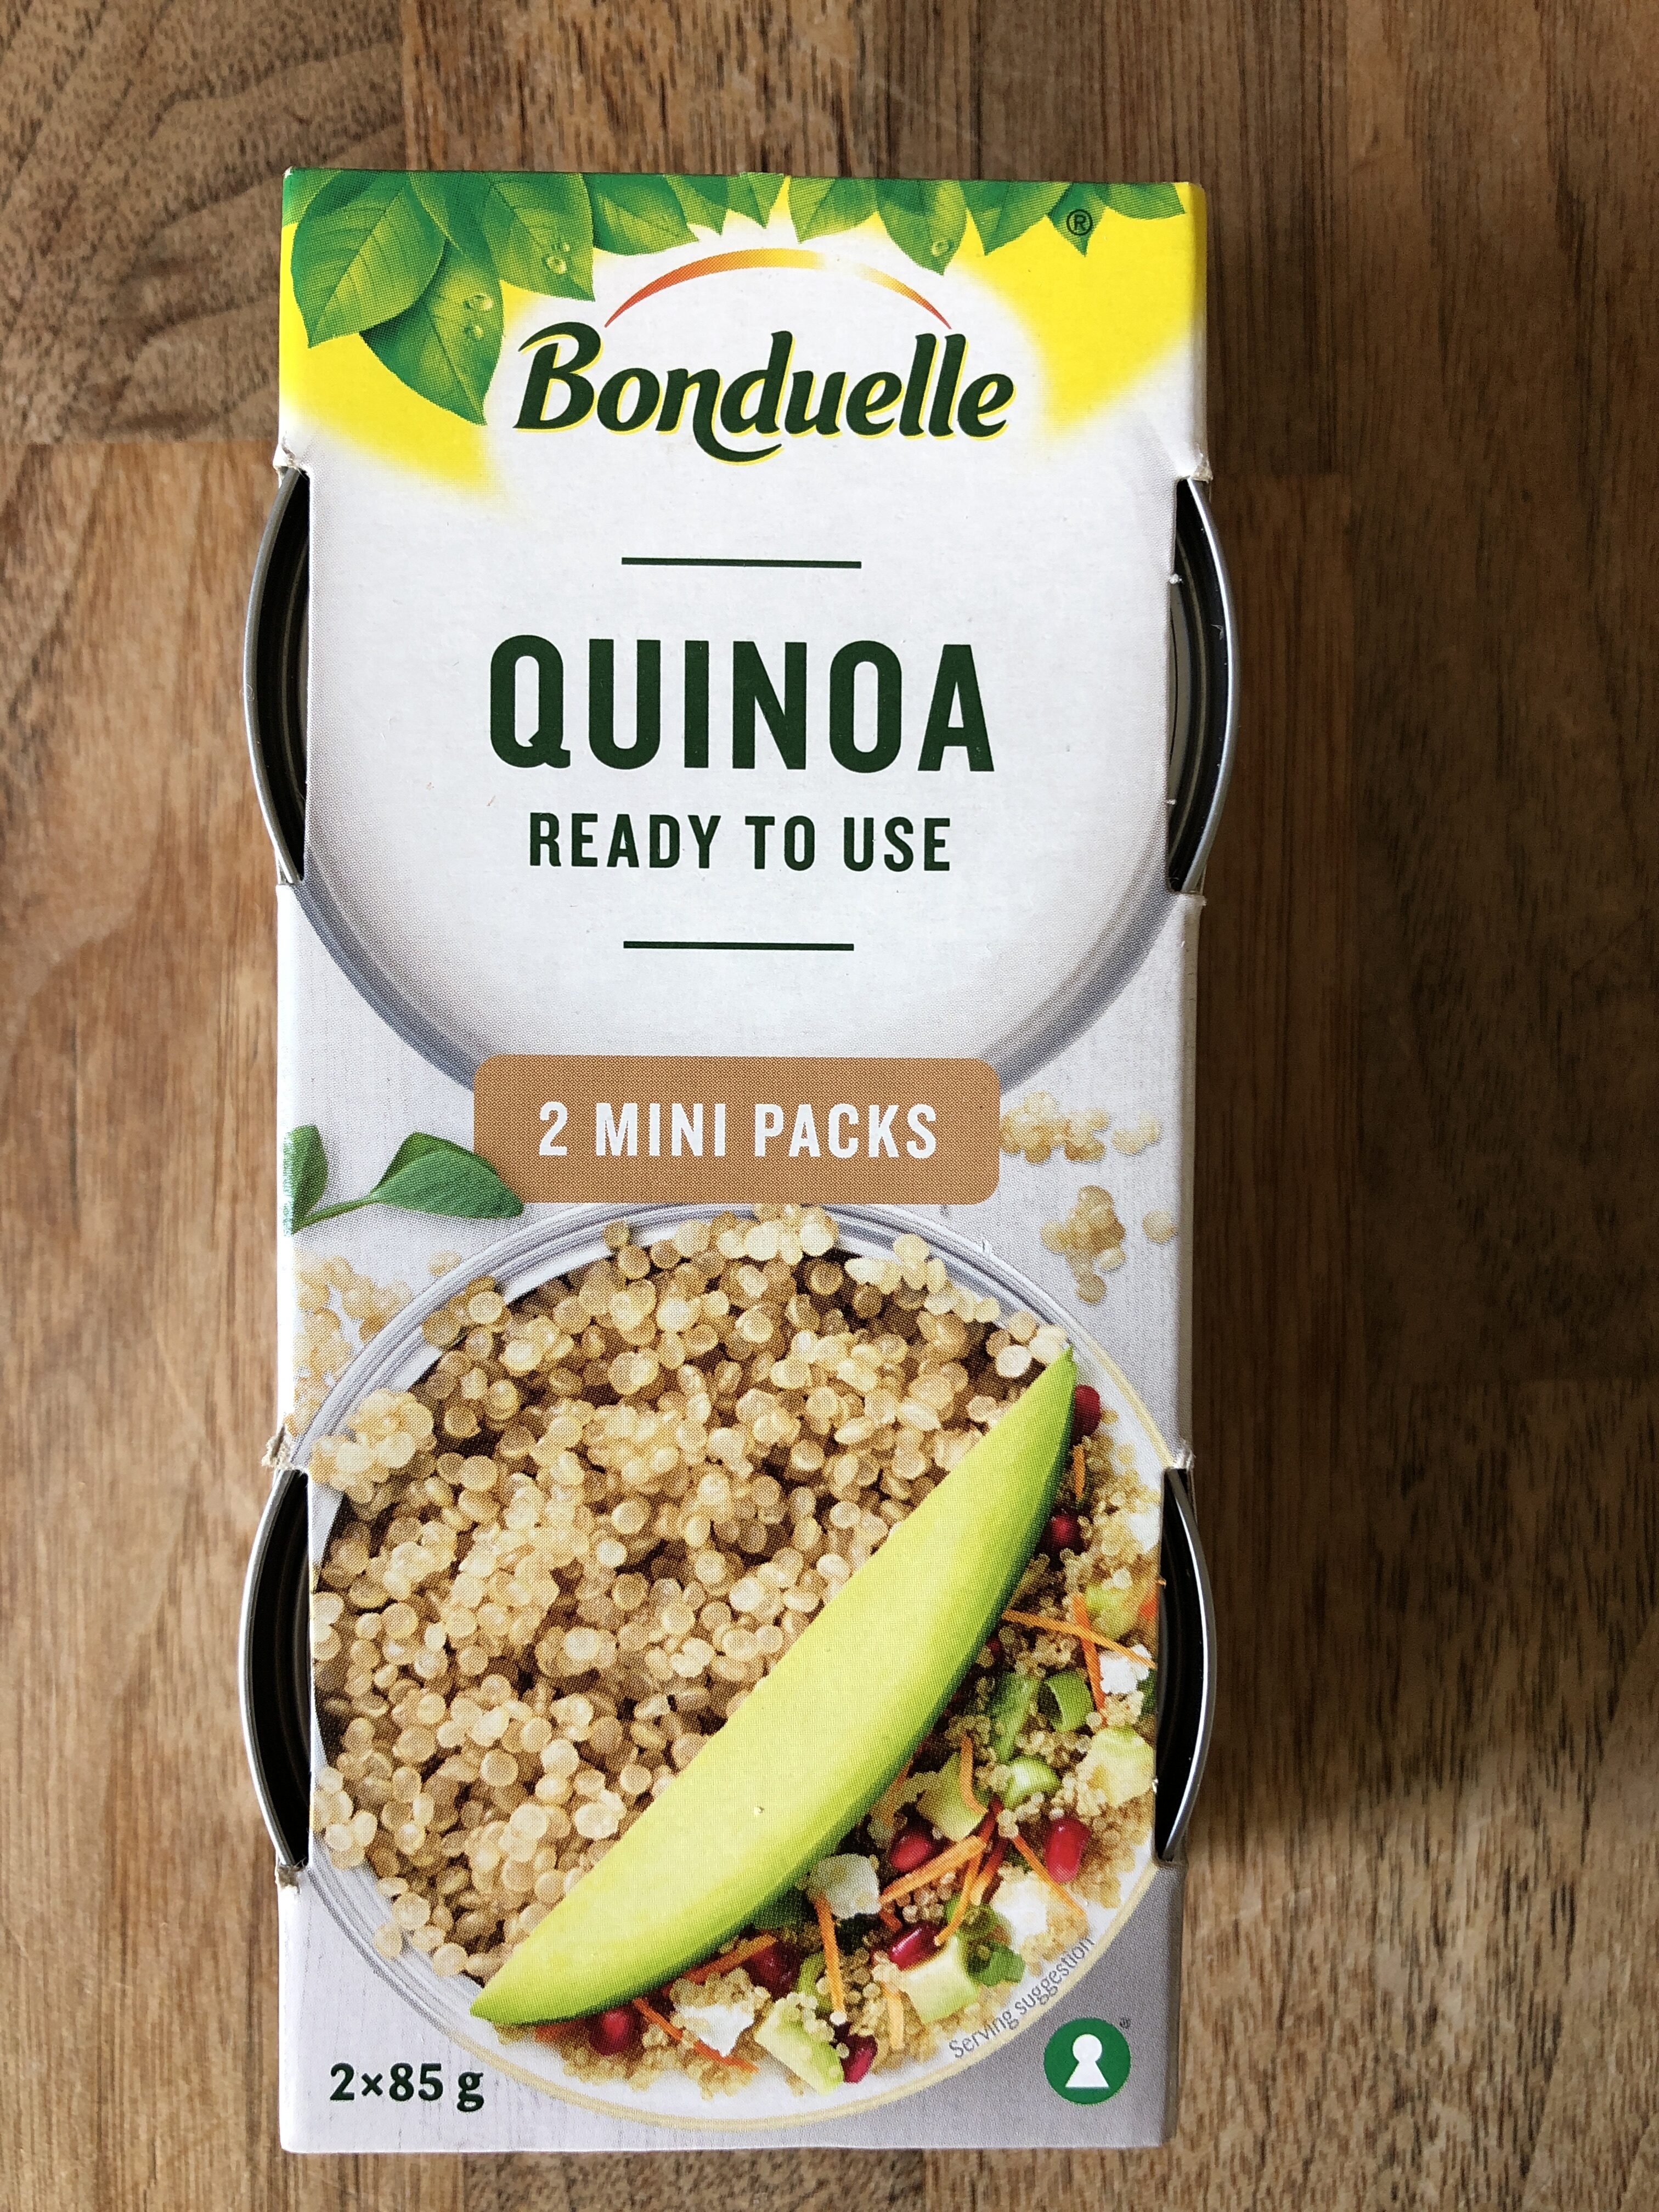 Bonduelle Quinoa - Produkt